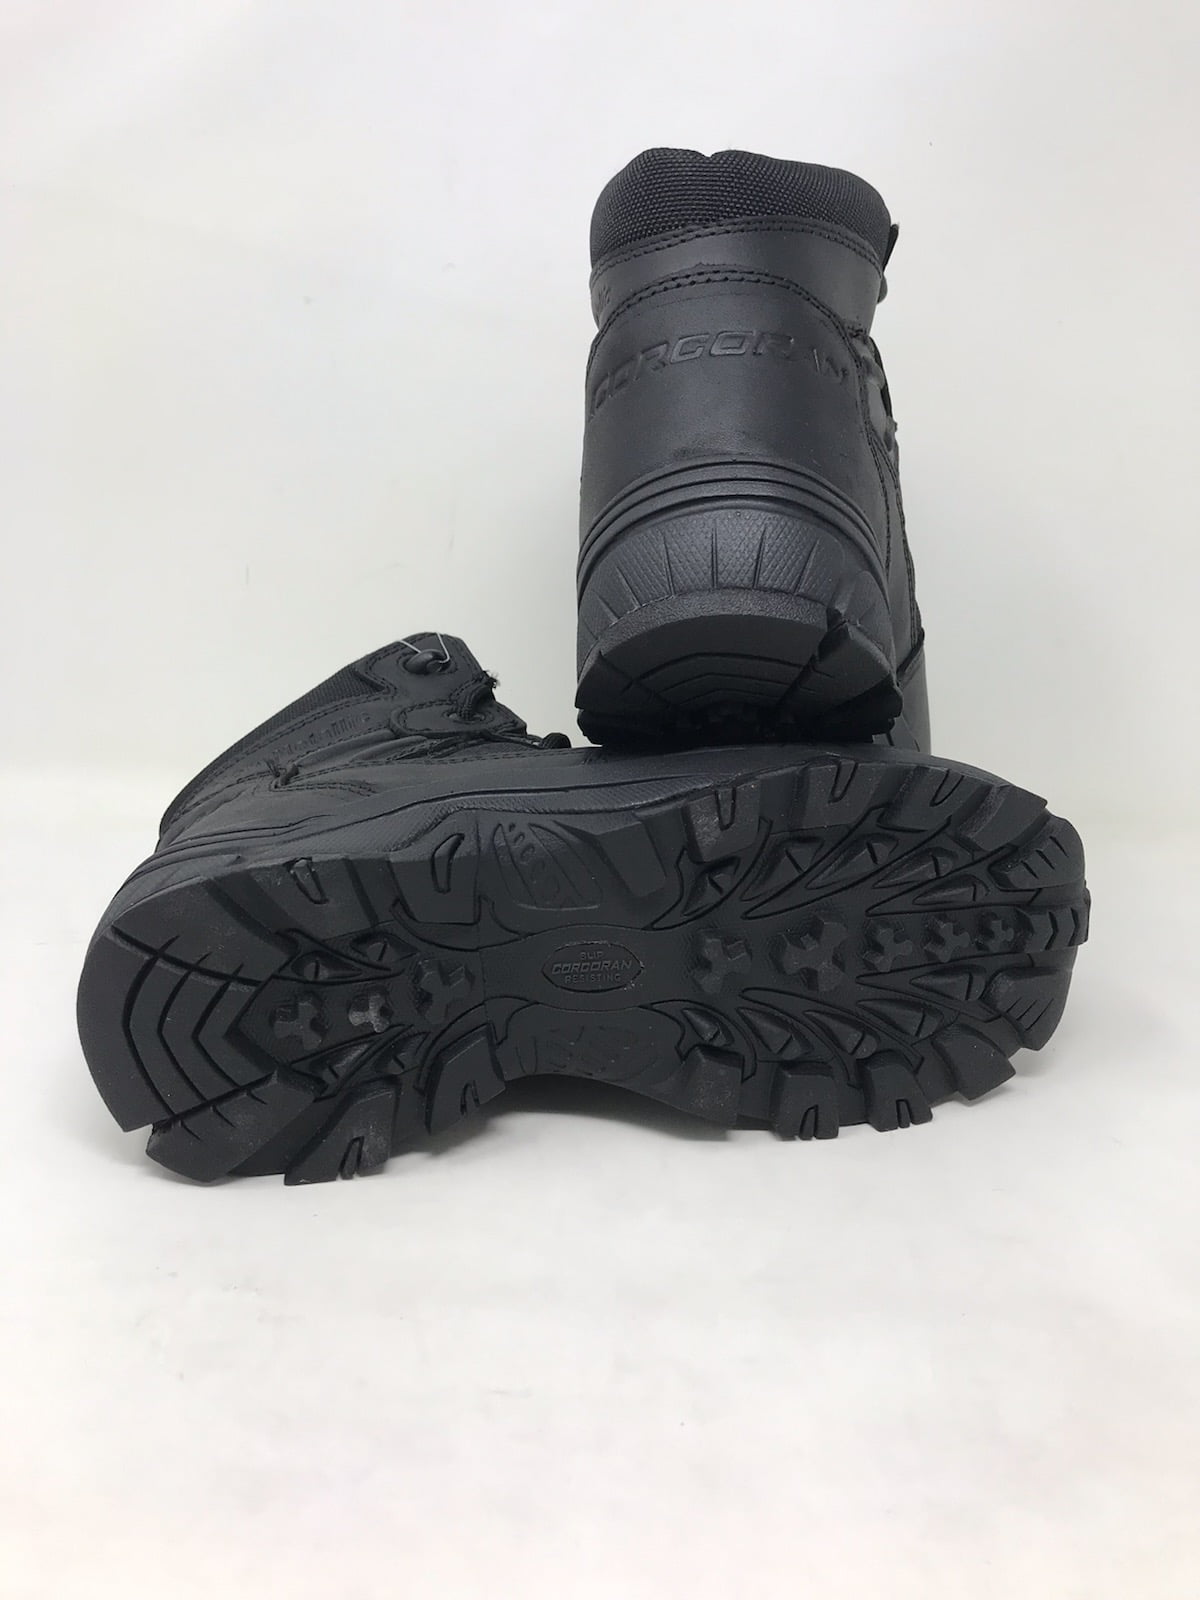 Corcoran Mens 6 Non-Metallic Tactical Boots Black 10.5 Wide CV5003